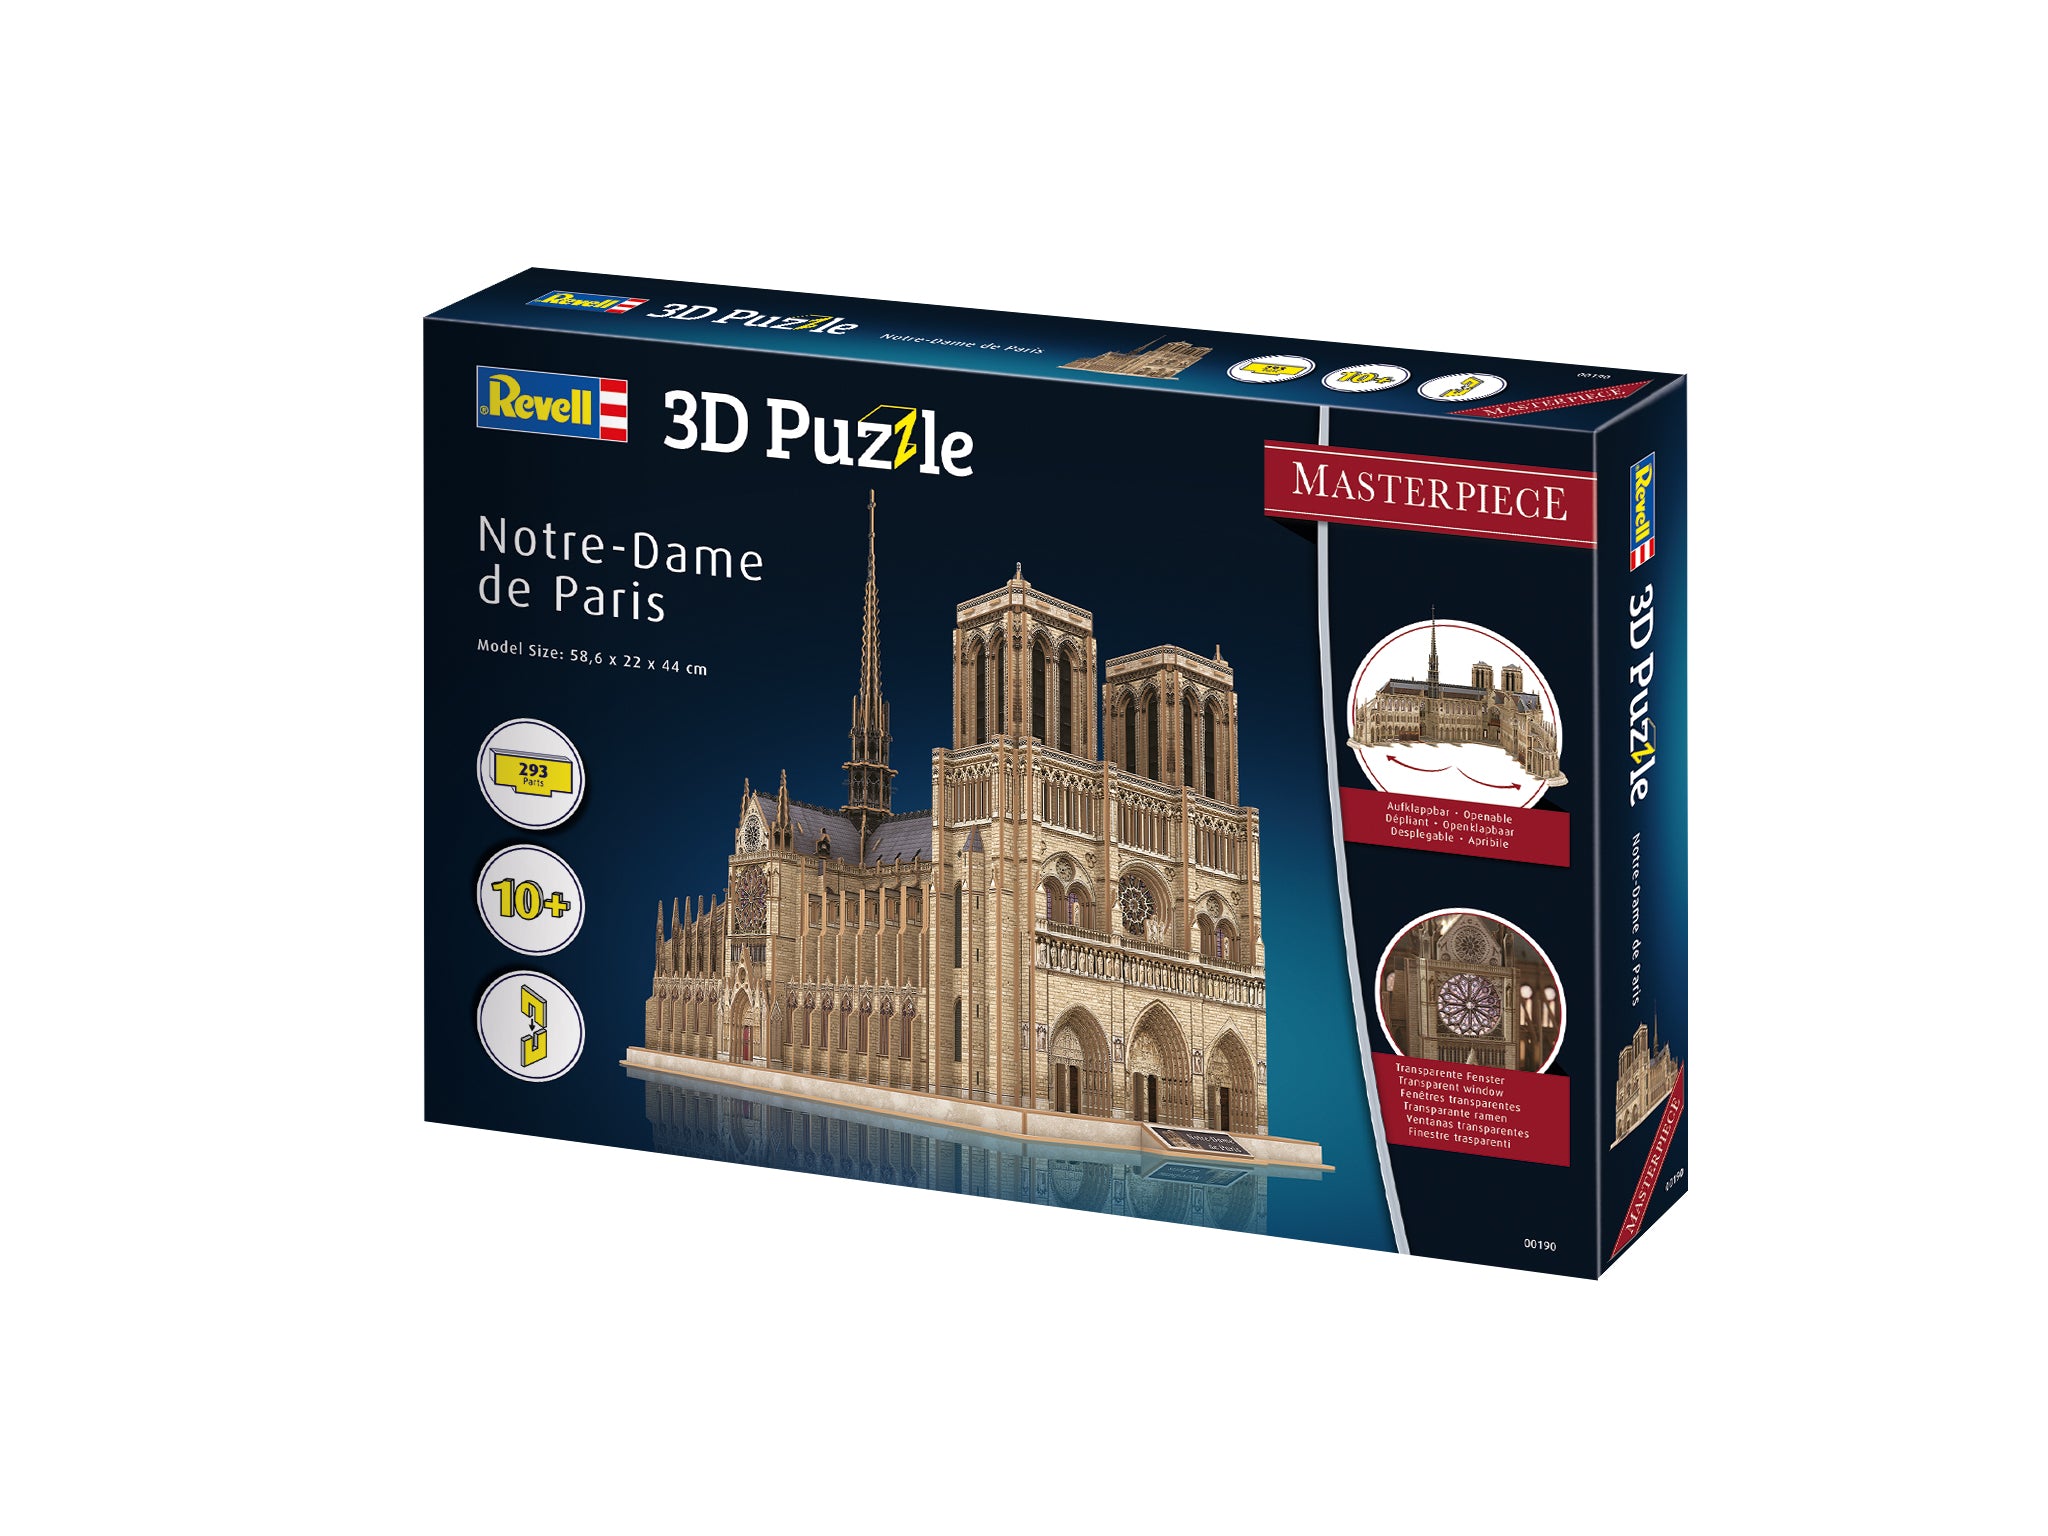 3D Puzzle Revell Notre-Dame de Paris - Masterpiece Edition Alternate 1